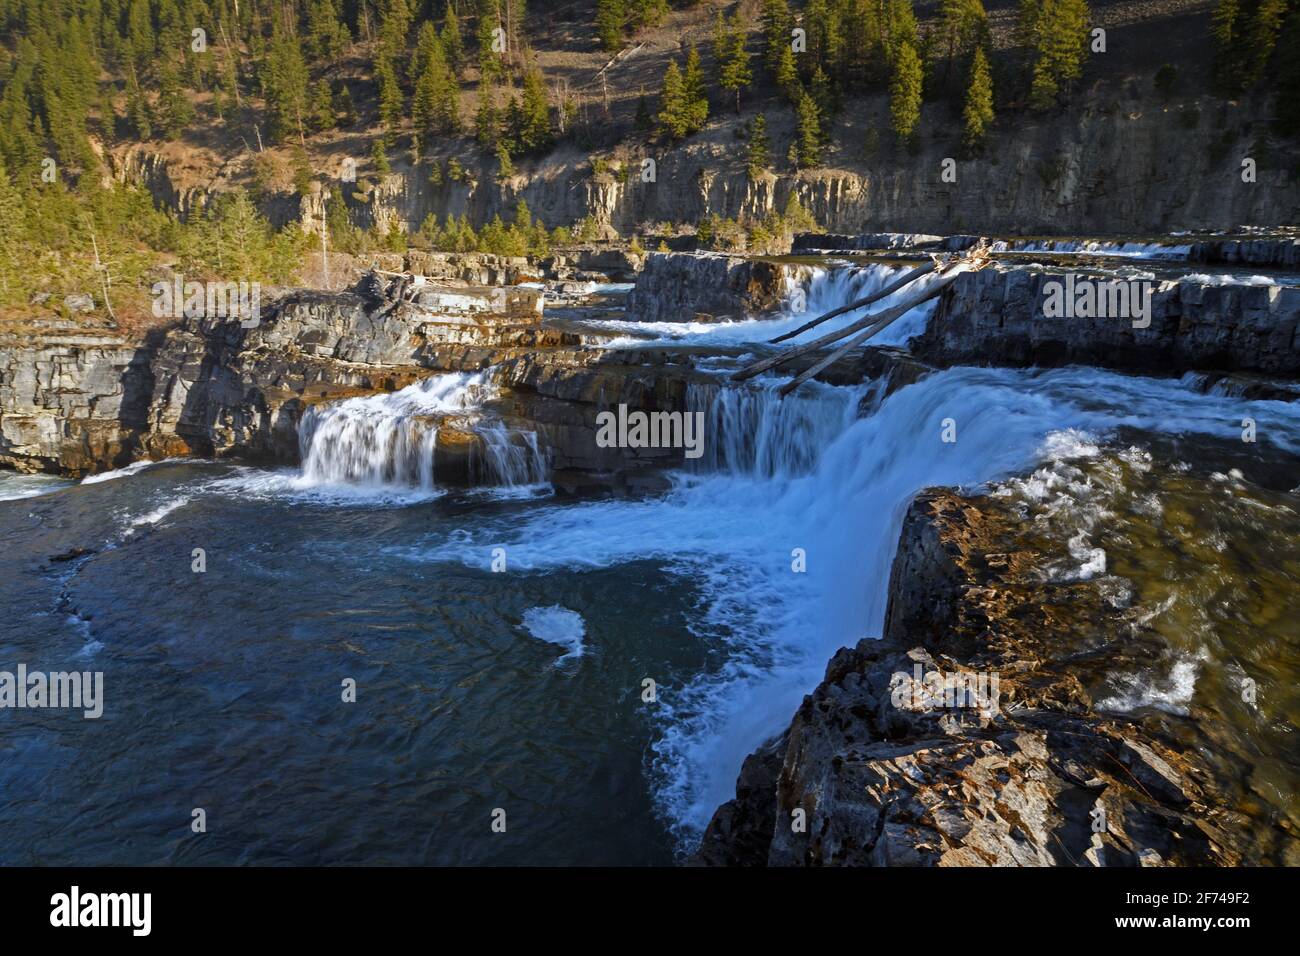 Kootenai Falls along the Kootenai River in spring. Lincoln County, northwest Montana. (Photo by Randy Beacham) Stock Photo